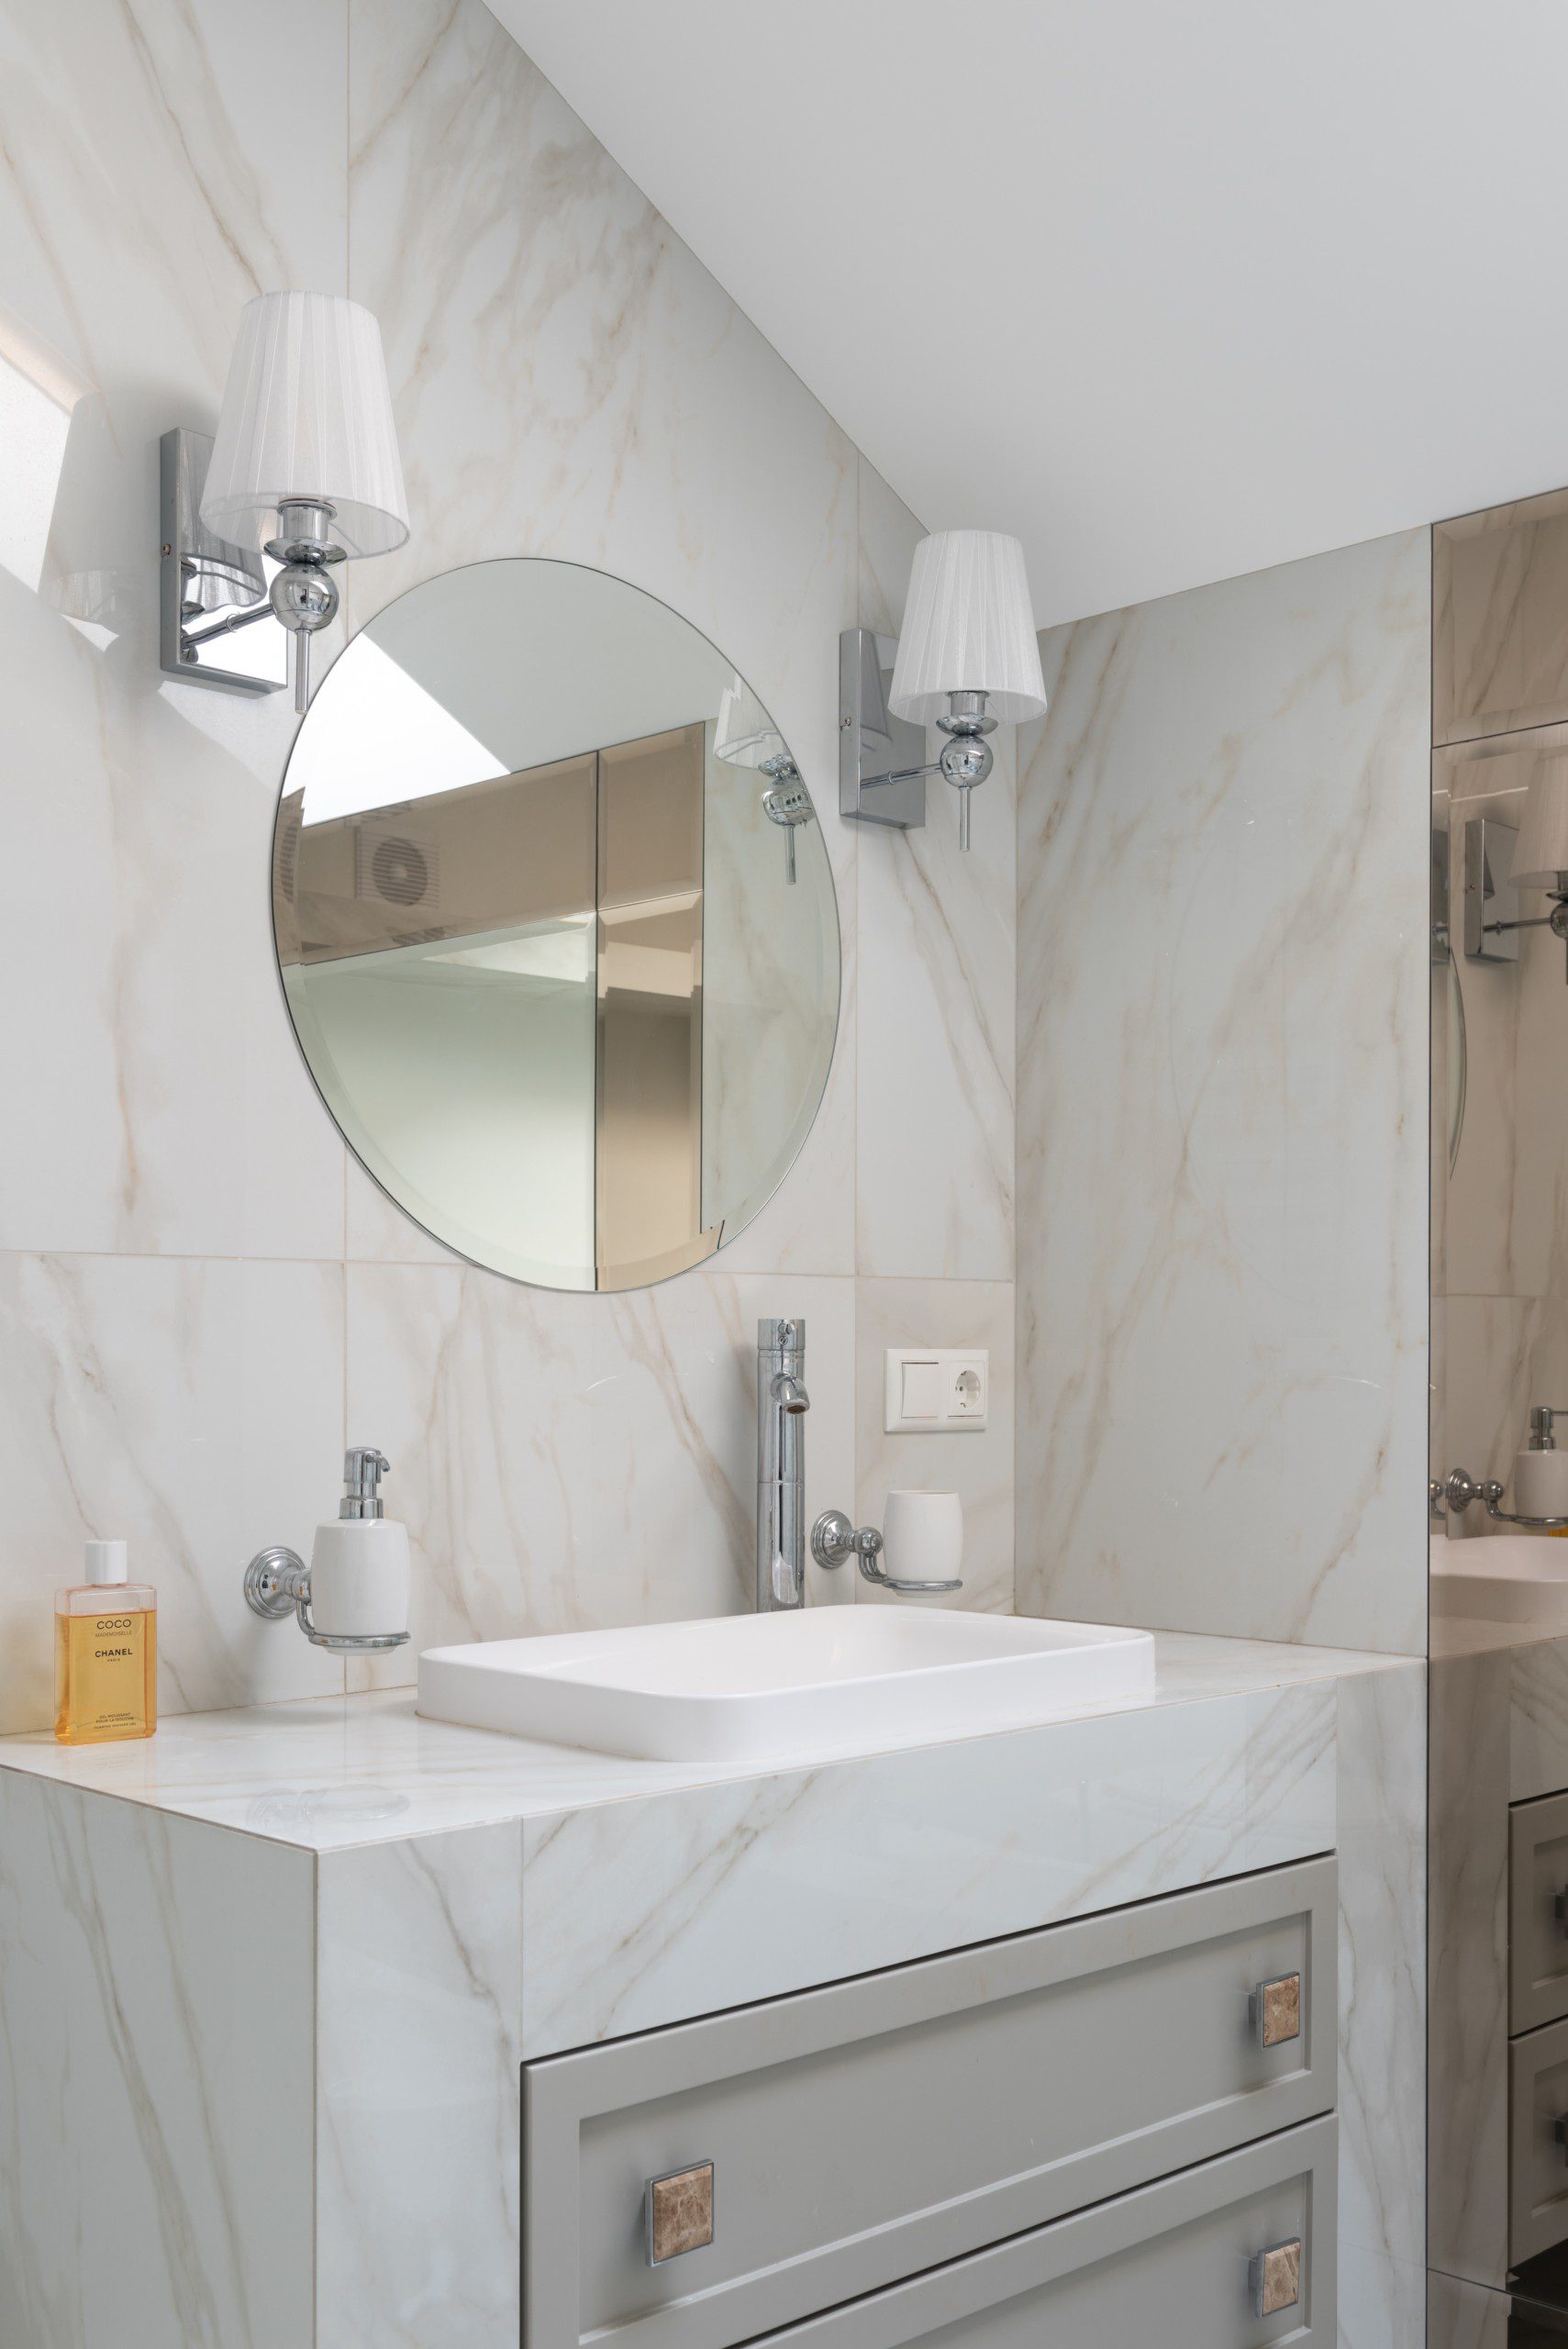 Imagem de um lavabo moderno todo revestido com pedra de mármore, uma pia com gabinete e um espelho circular.